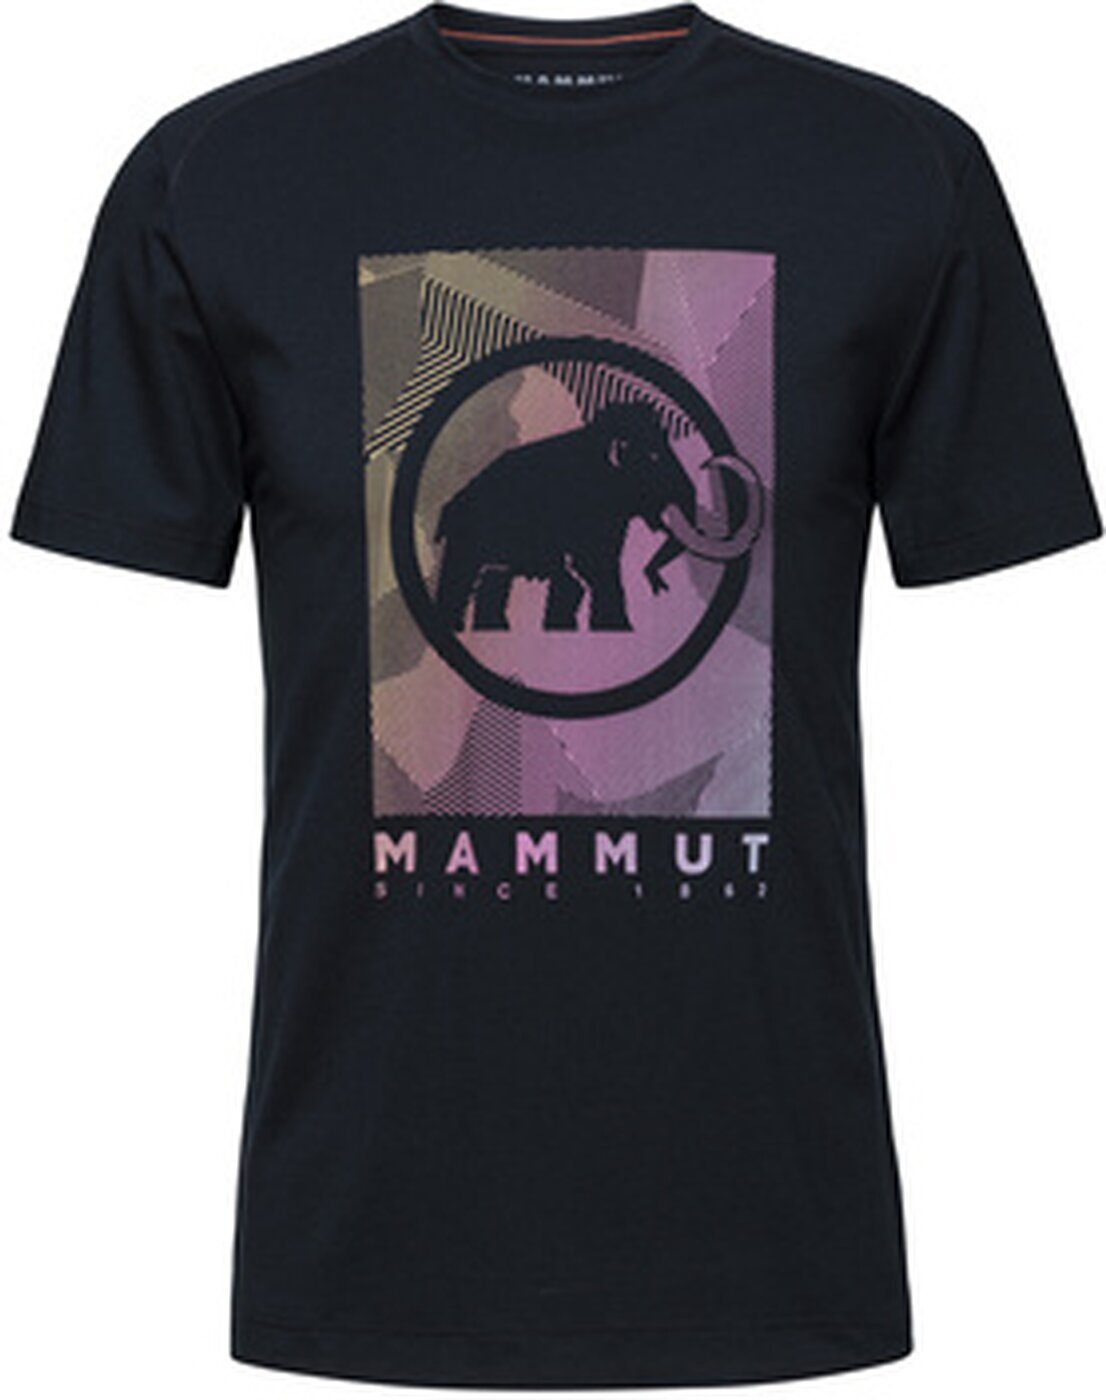 Mammut 00254 Trovat T-Shirt Herren PRT2 Shirt black Mammut